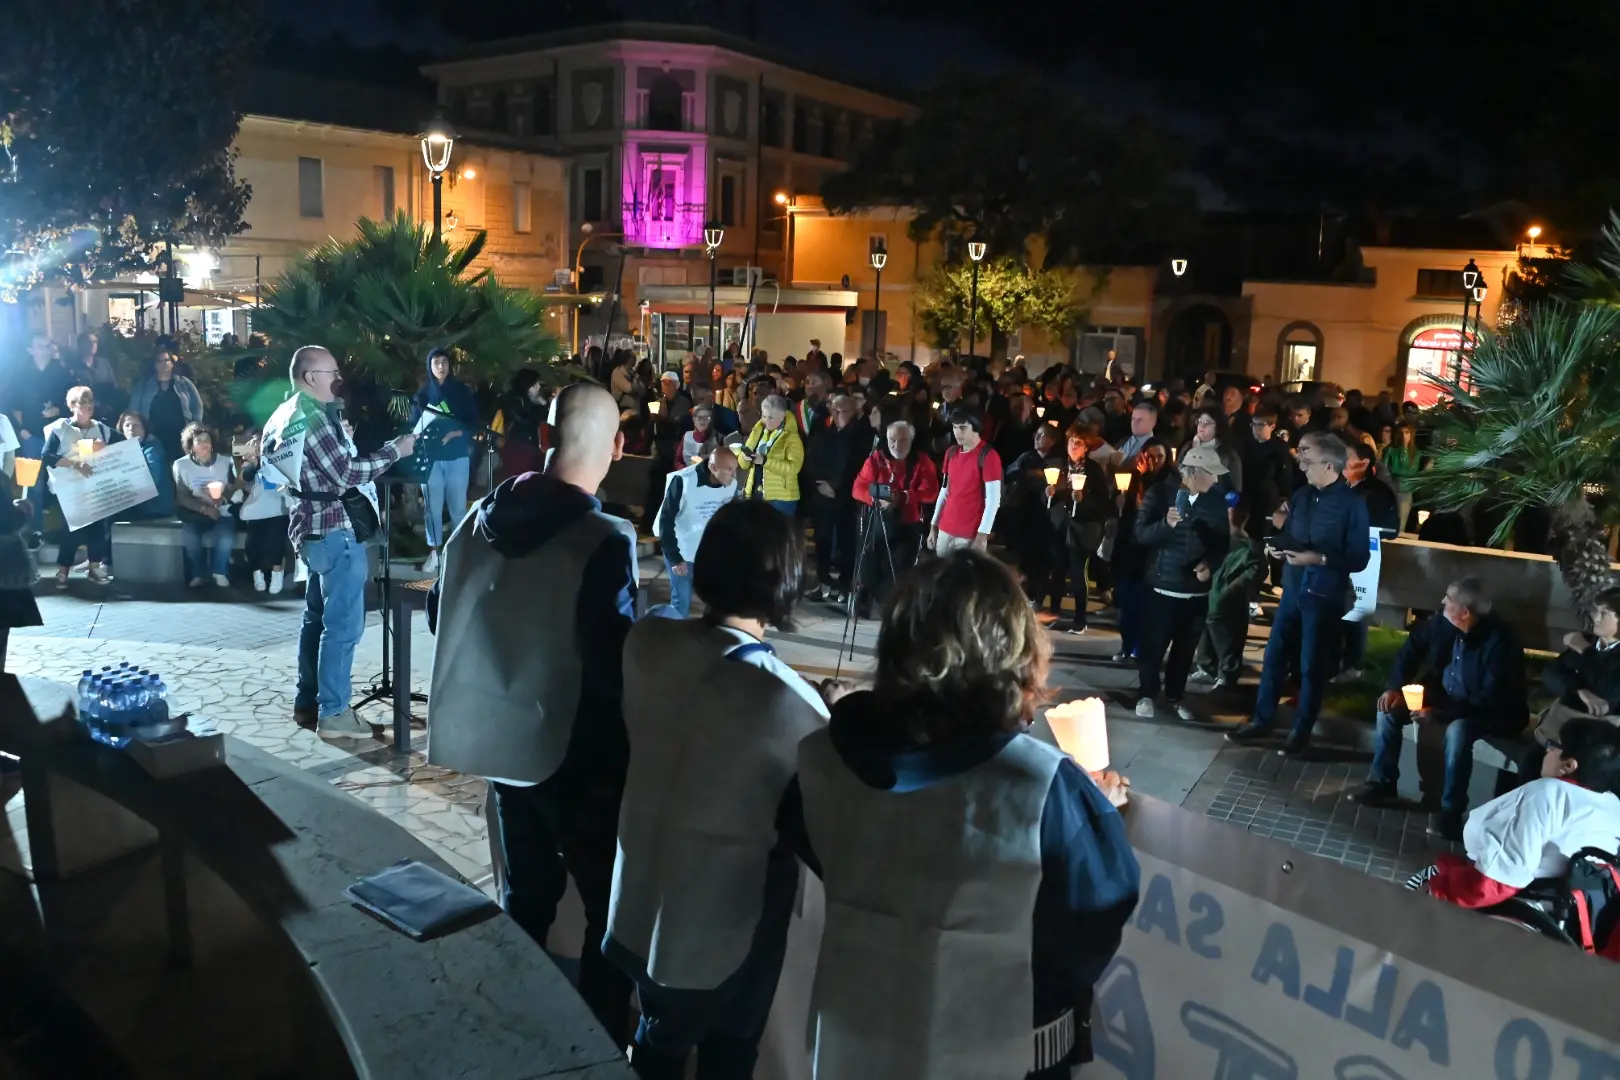 Una manifestazione per la sanità pubblica in Sardegna (Alessandra Chergia)